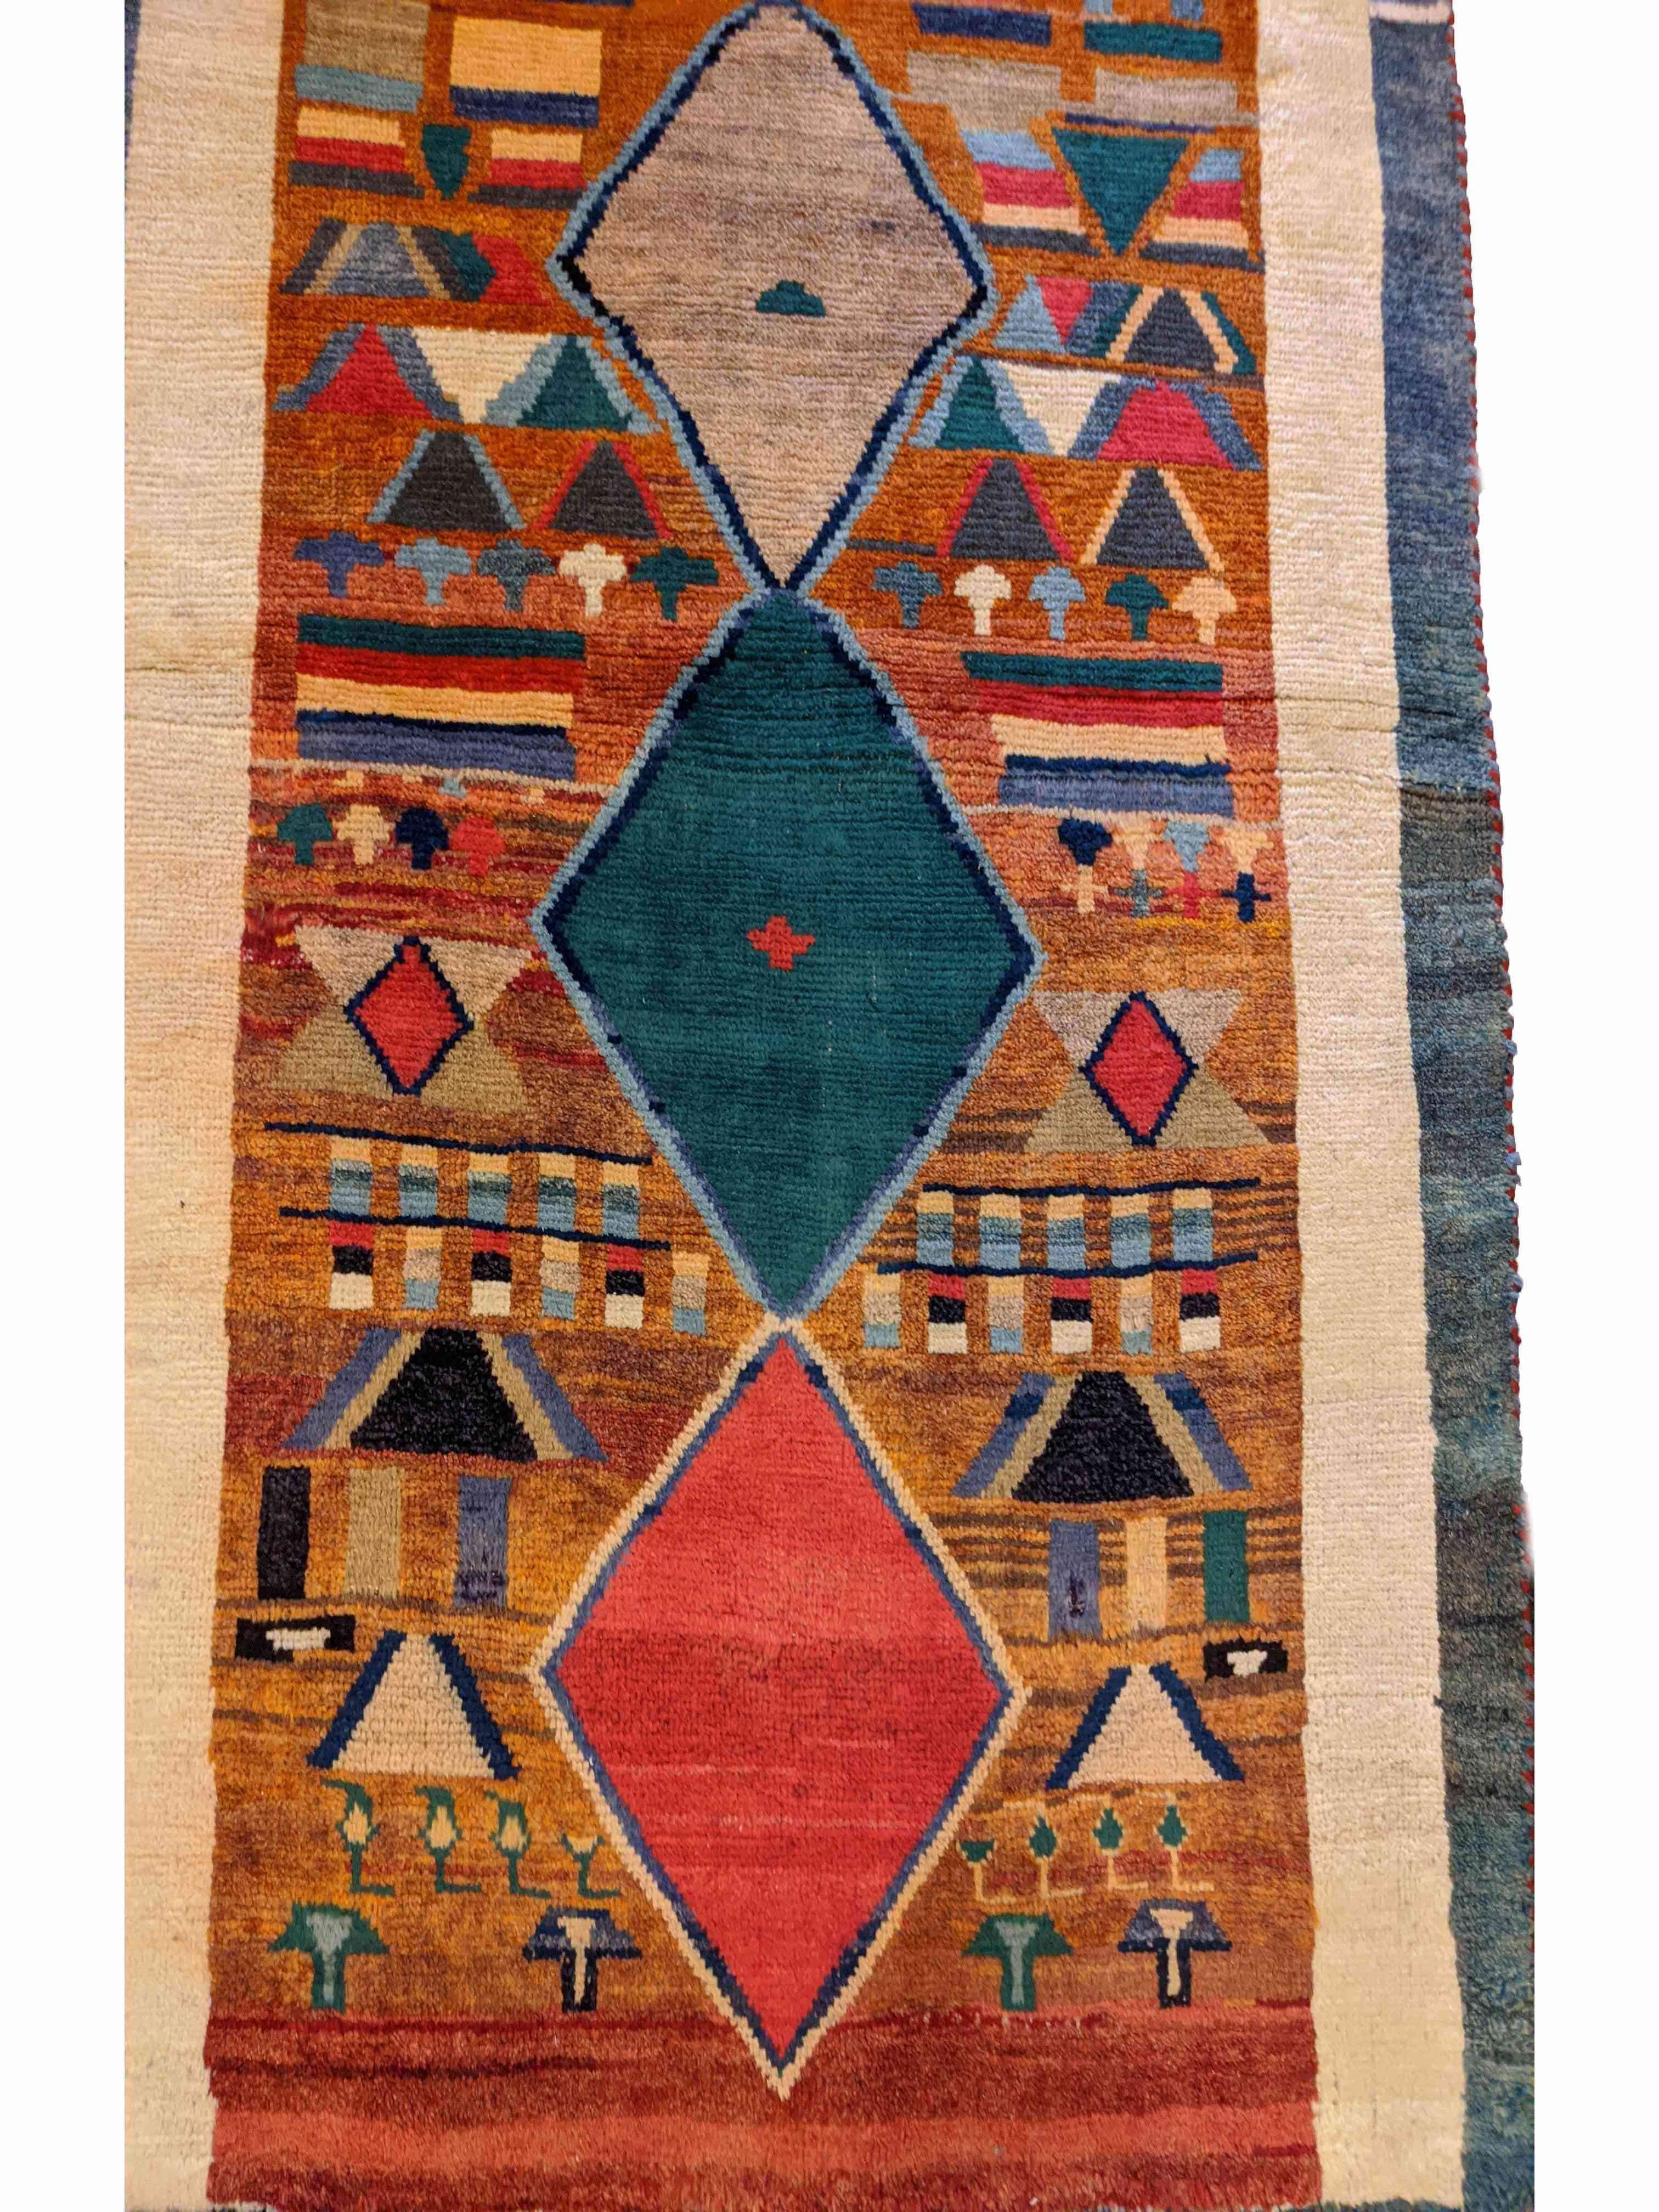 170 x 100 cm Nomadic Persian Gabbeh Tribal Orange Rug - Rugmaster